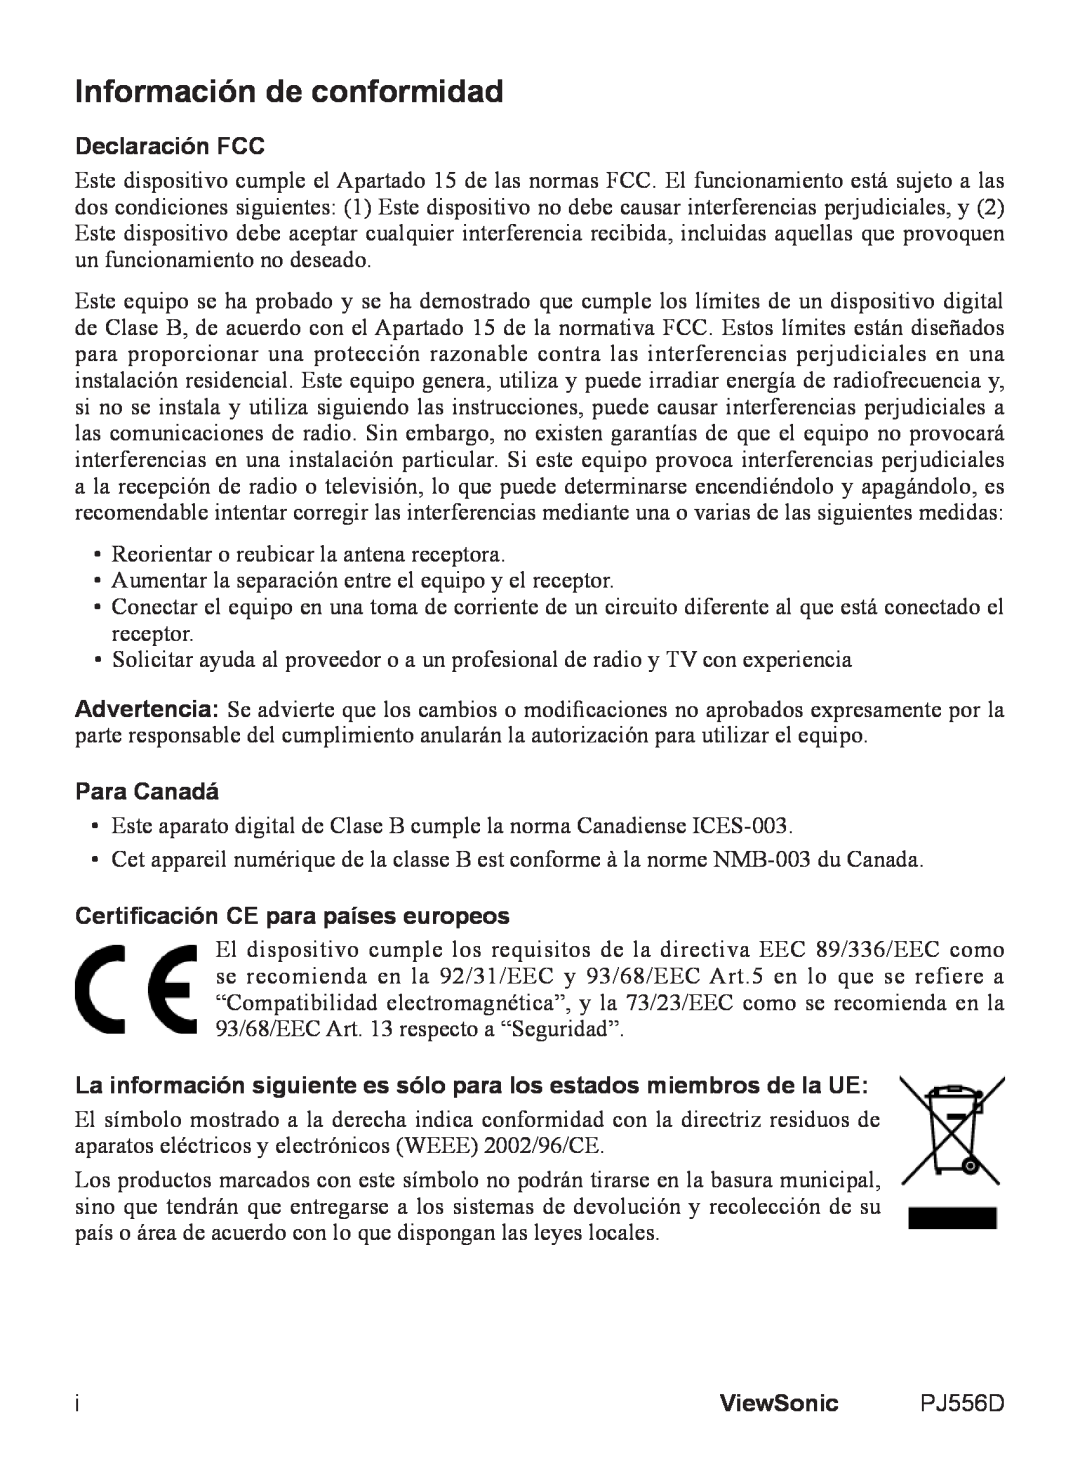 ViewSonic PJ556D manual Información de conformidad, Declaración FCC, Para Canadá, Certificación CE para países europeos 